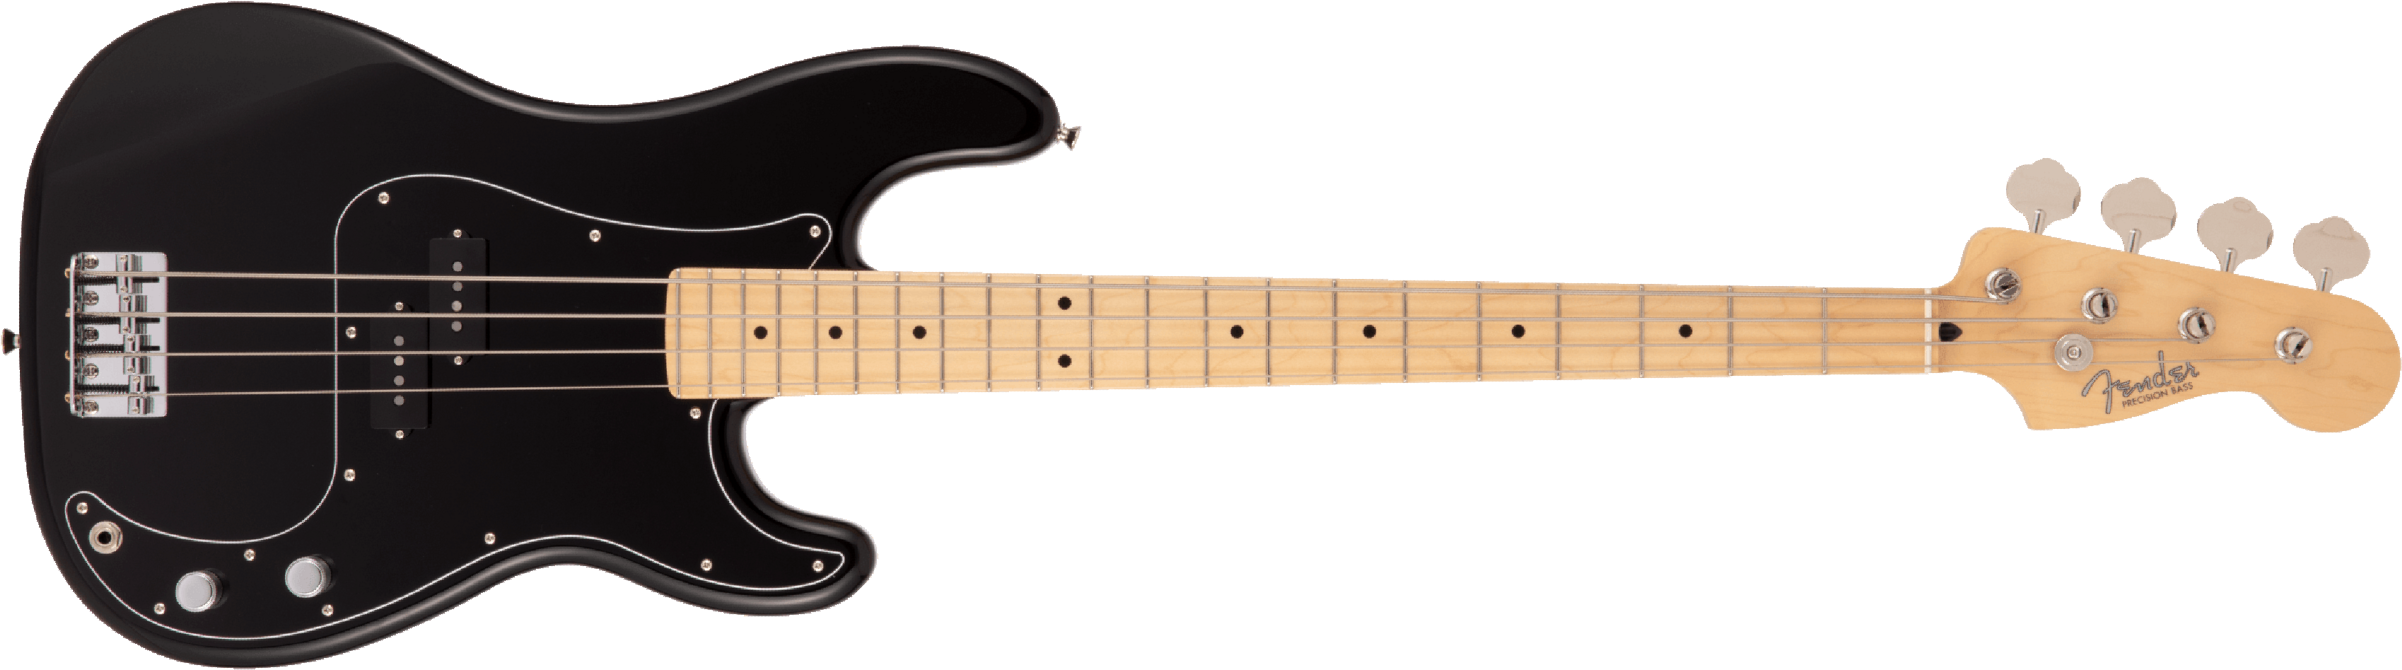 Fender Precision Bass Hybrid Ii Japan Mn - Black - Bajo eléctrico de cuerpo sólido - Main picture